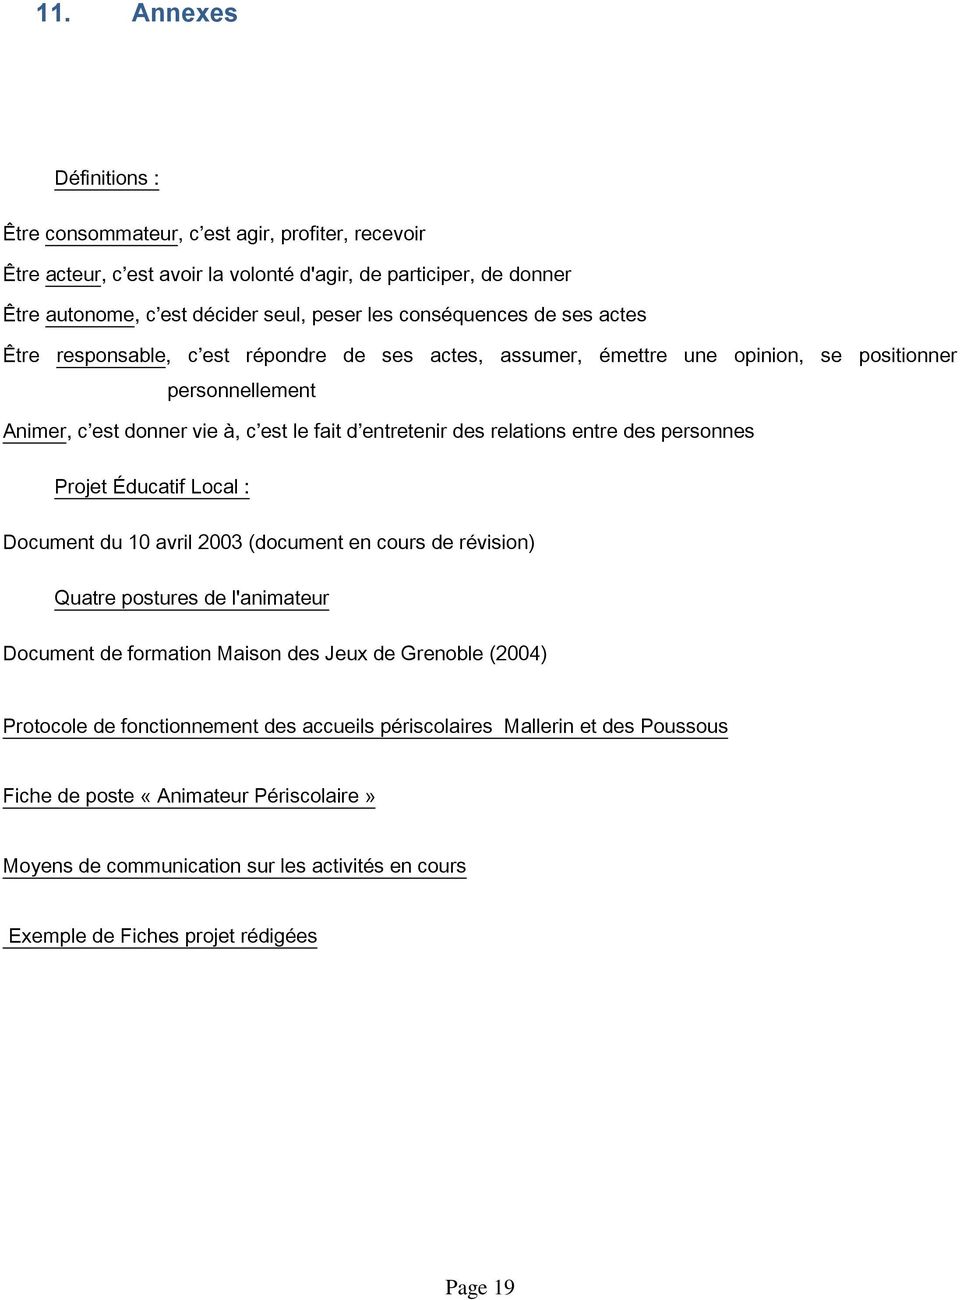 relations entre des personnes Projet Éducatif Local : Document du 10 avril 2003 (document en cours de révision) Quatre postures de l'animateur Document de formation Maison des Jeux de Grenoble